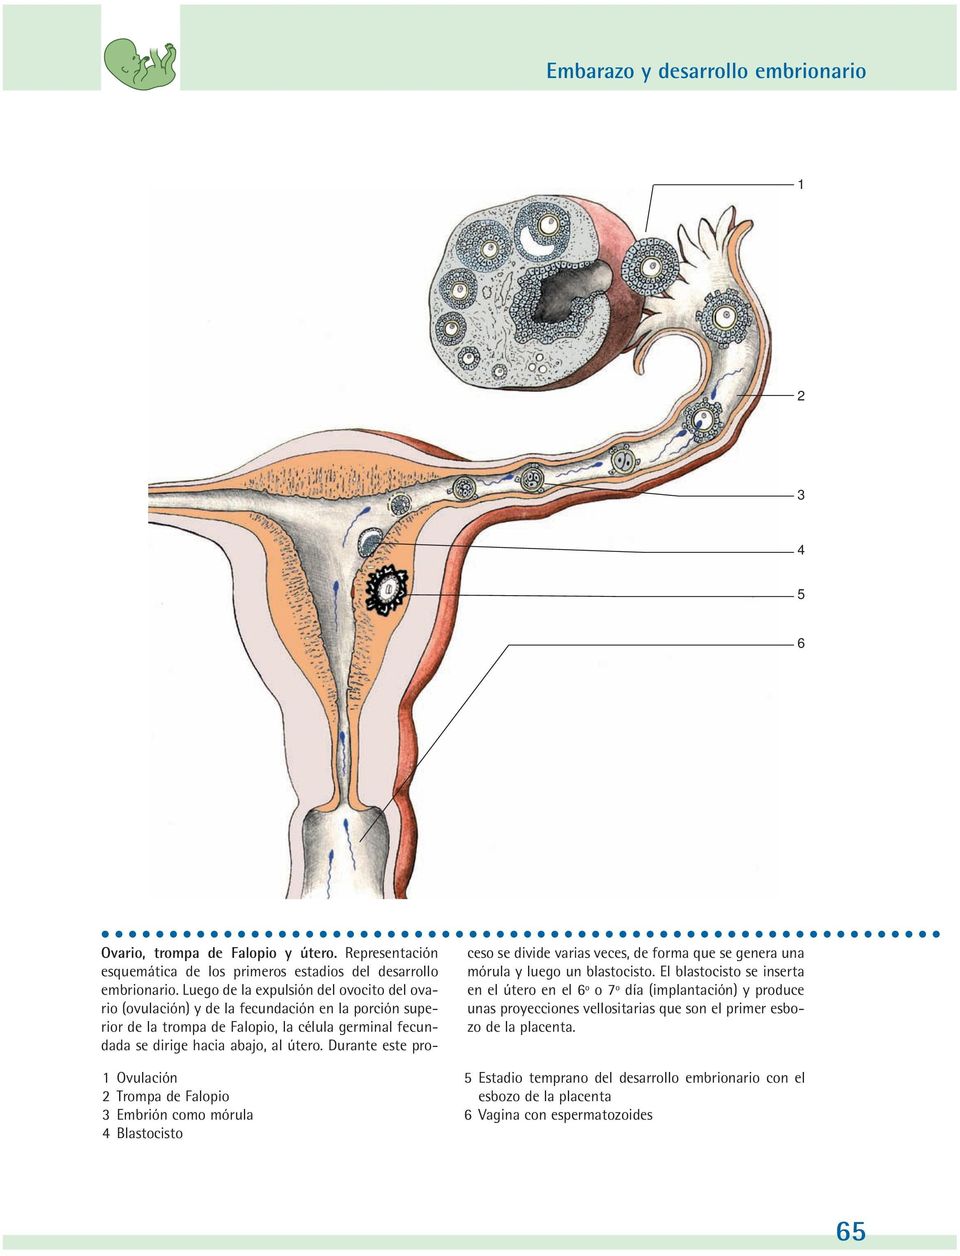 Luego de la expulsión del ovocito del ovario (ovulación) y de la fecundación en la porción superior de la trompa de Falopio, la célula germinal fecundada se dirige hacia abajo, al útero.